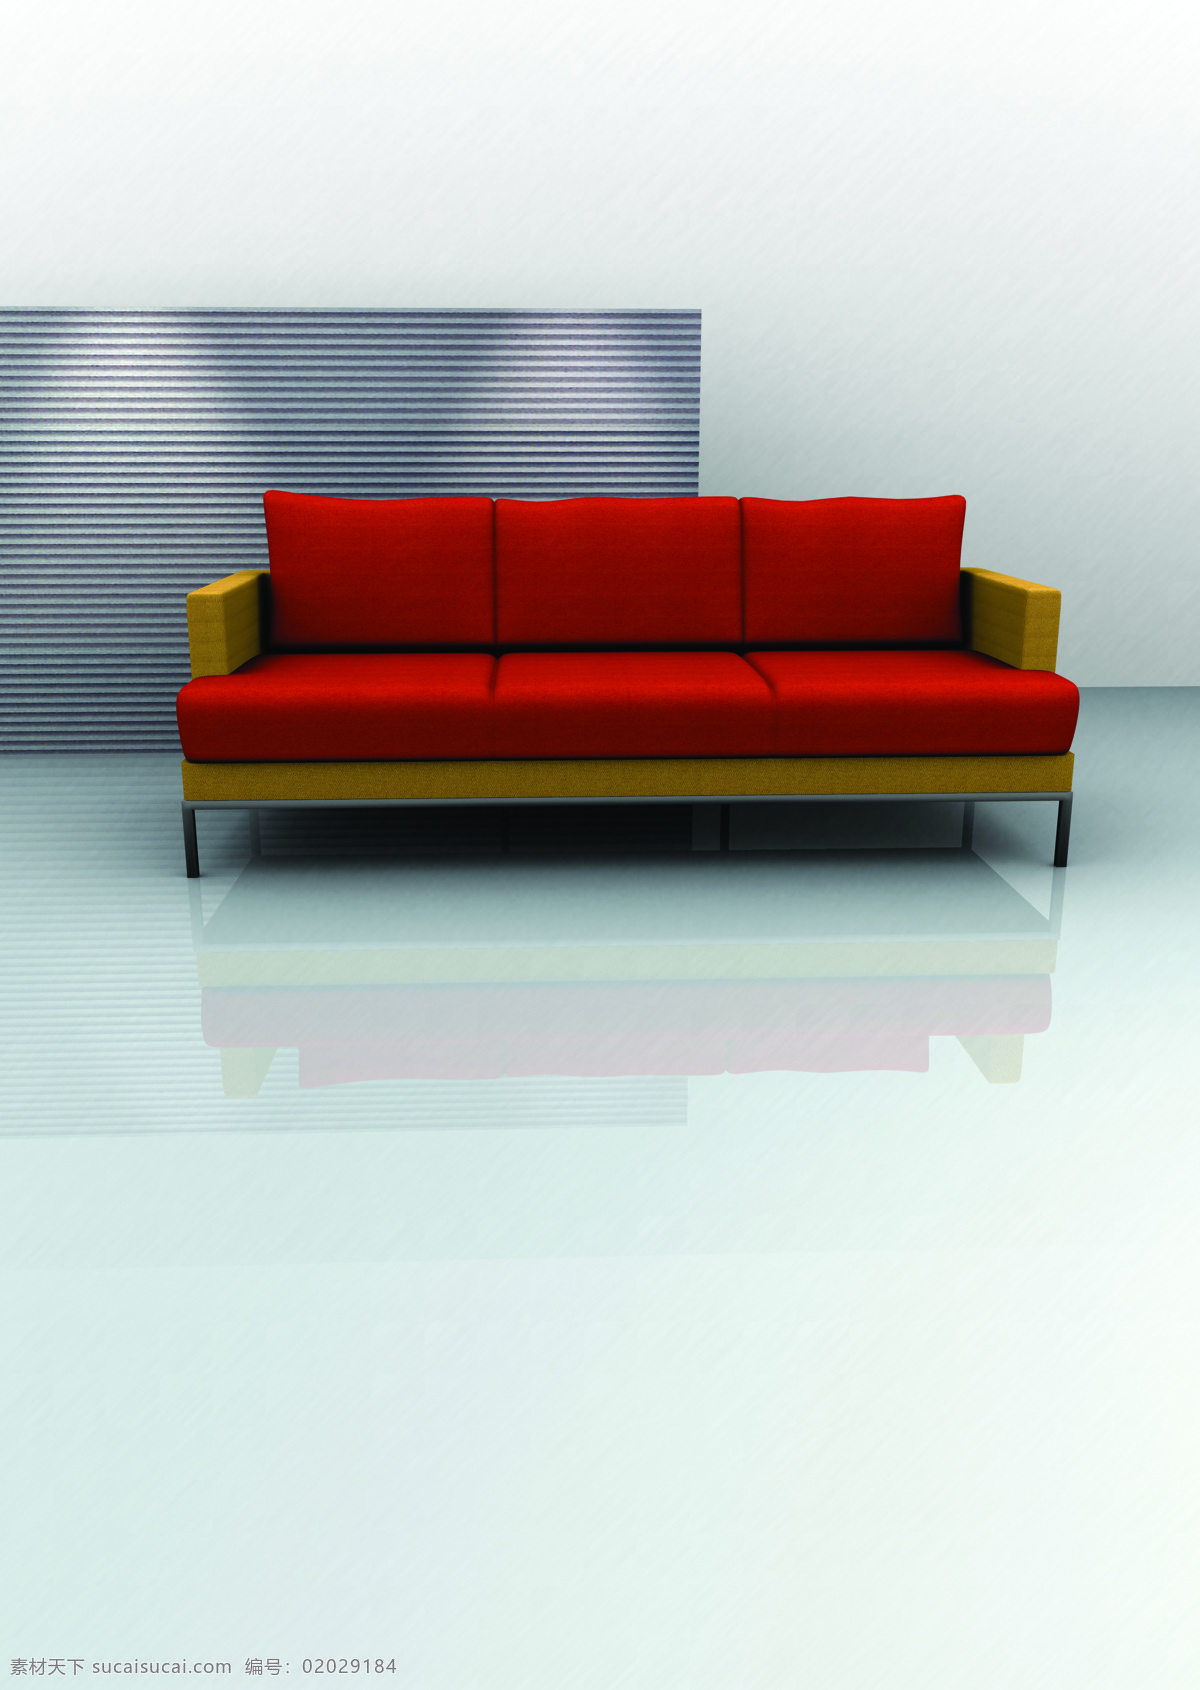 3d 软件 沙发 室内 一个沙发 3d设计图 效果图 现代家居 高清图片 家具电器 生活百科